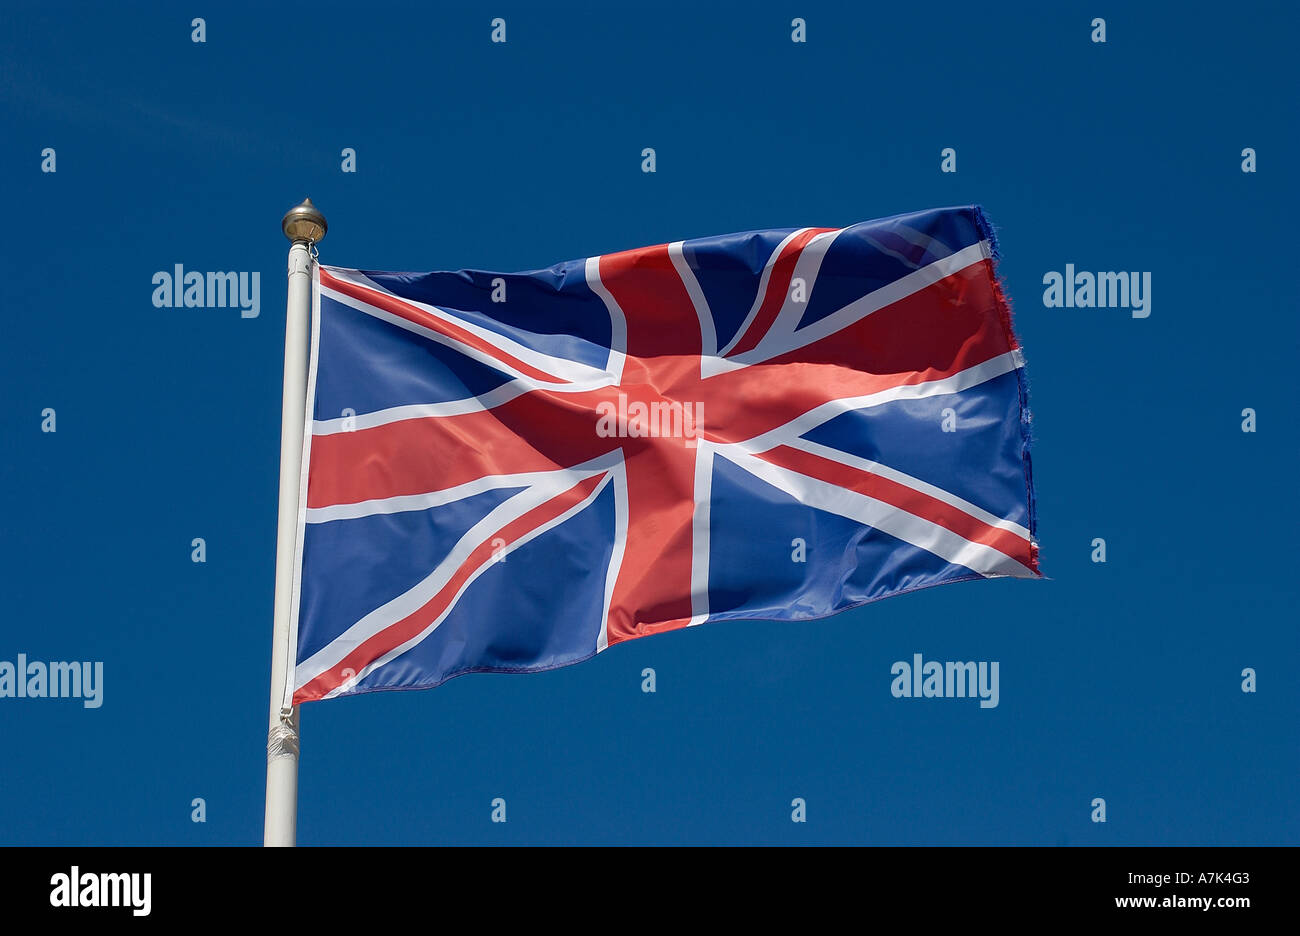 Union Jack (Union flag) of the United Kingdom Stock Photo